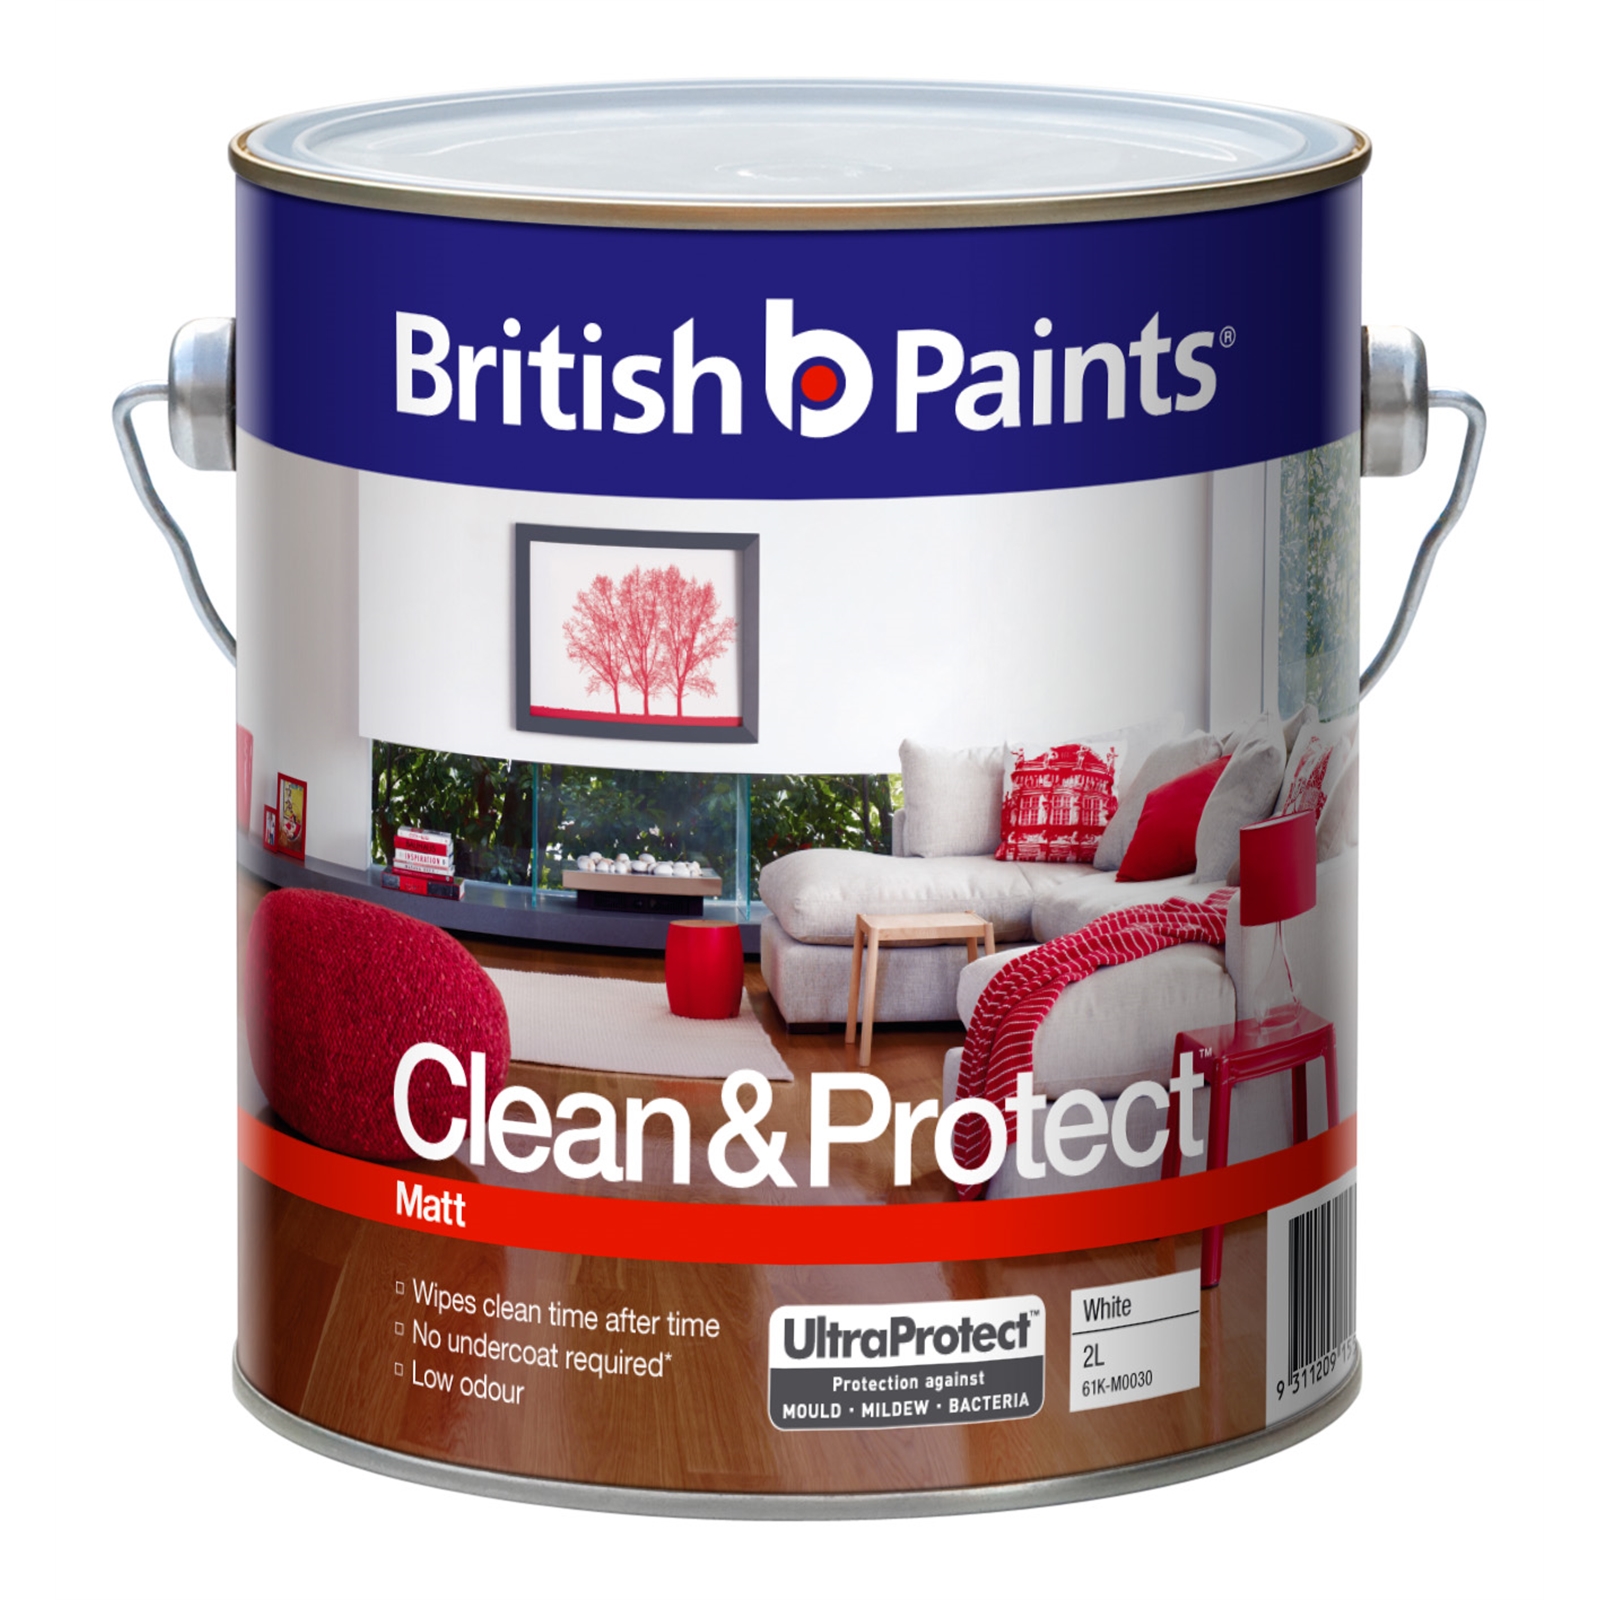 British Paints Clean & Protect 2L Matt White Interior Paint